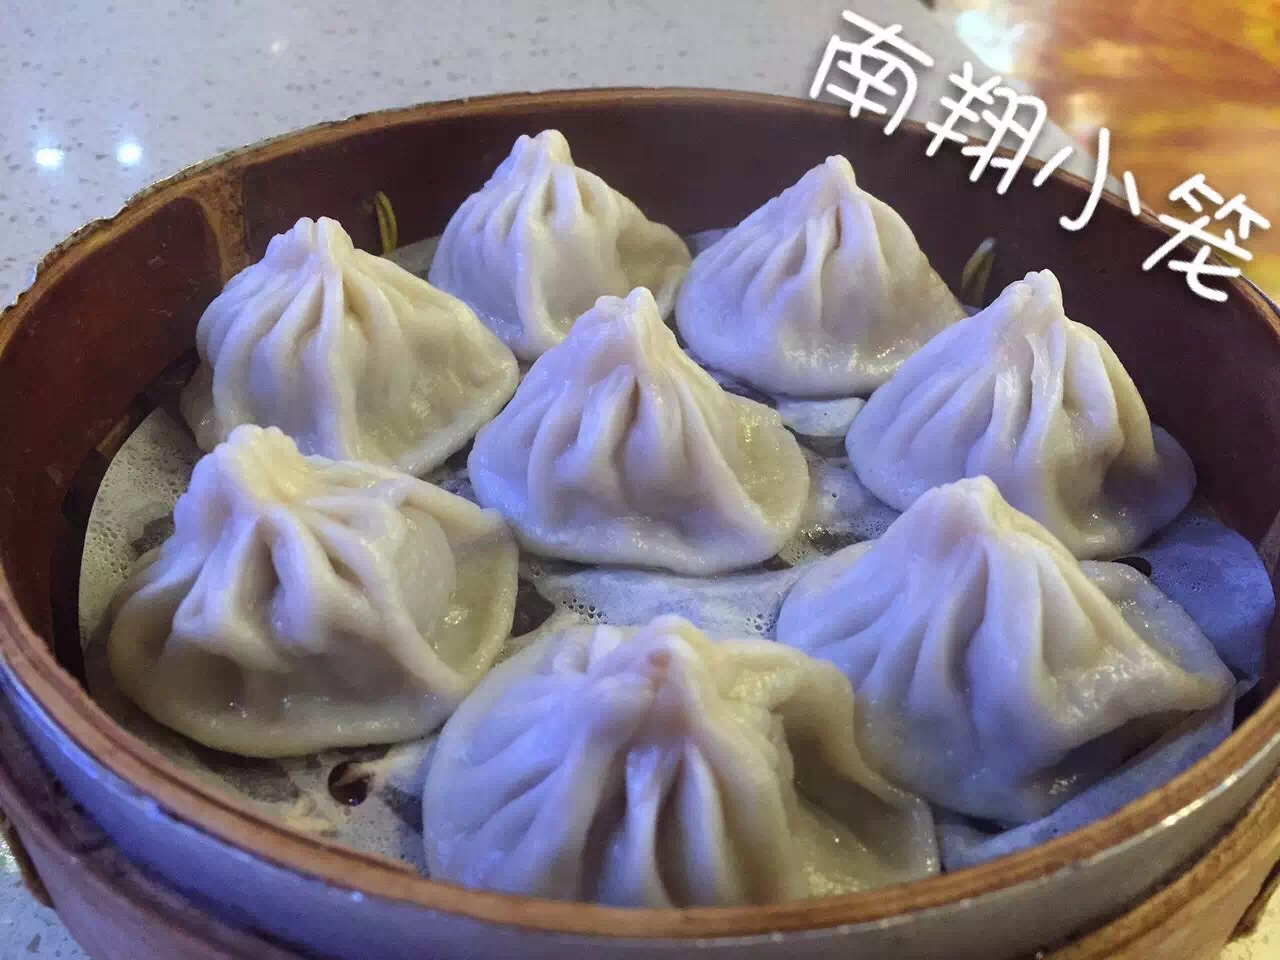 昨天晚上跟上海的朋友在韩寒的餐厅吃饭，四星评价。创意与味道都很不错只是